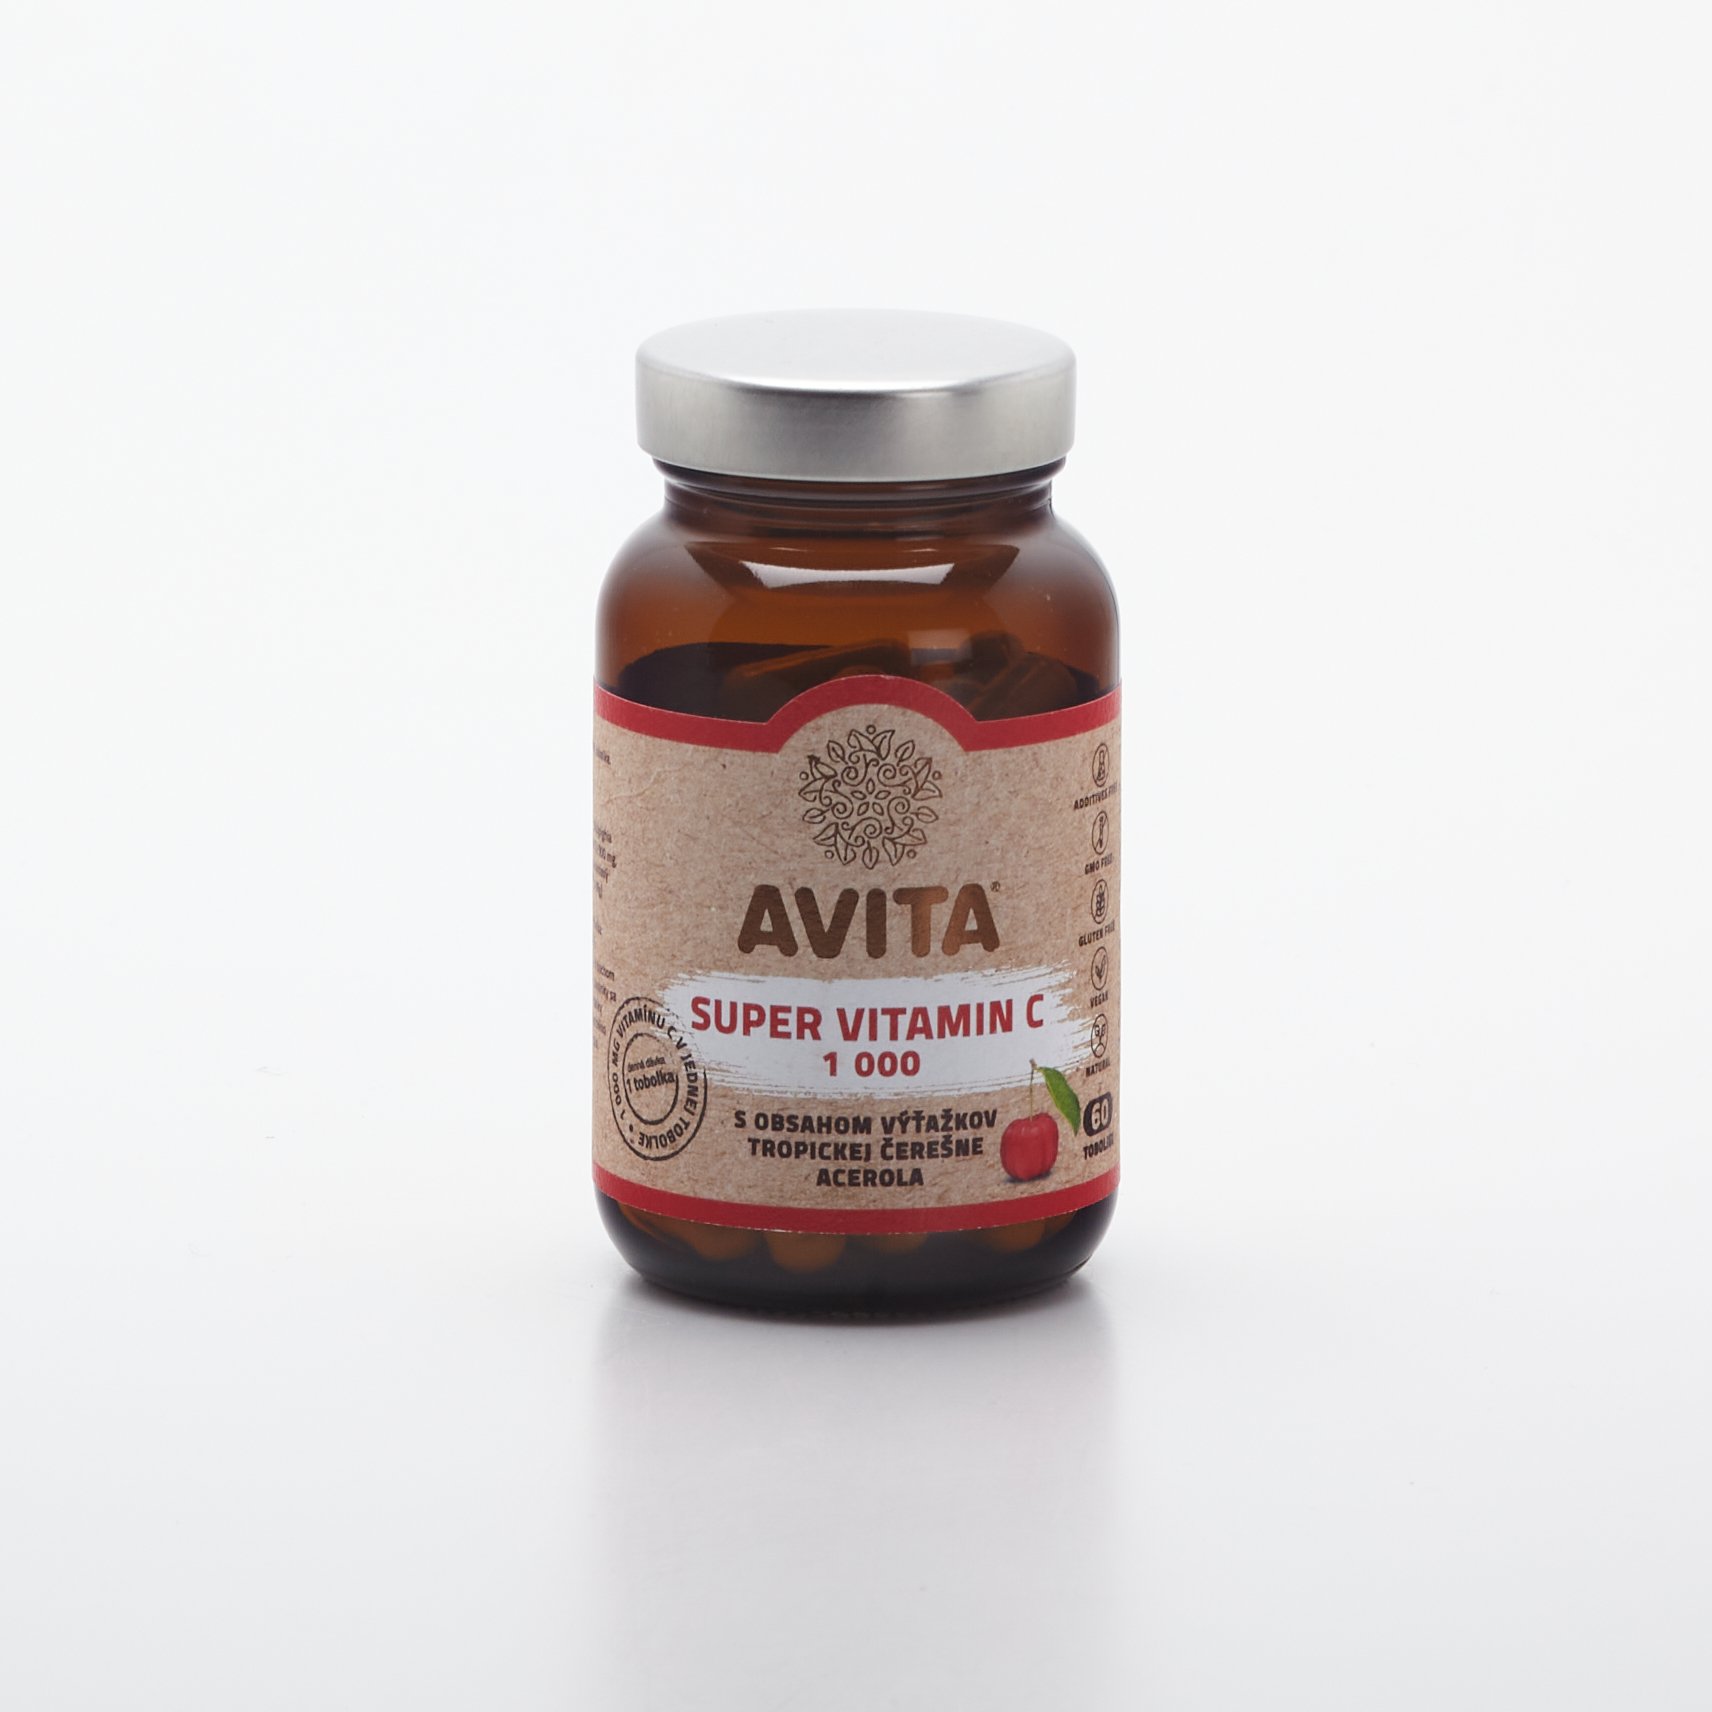 AVITA Super vitamin C 1000 60ks